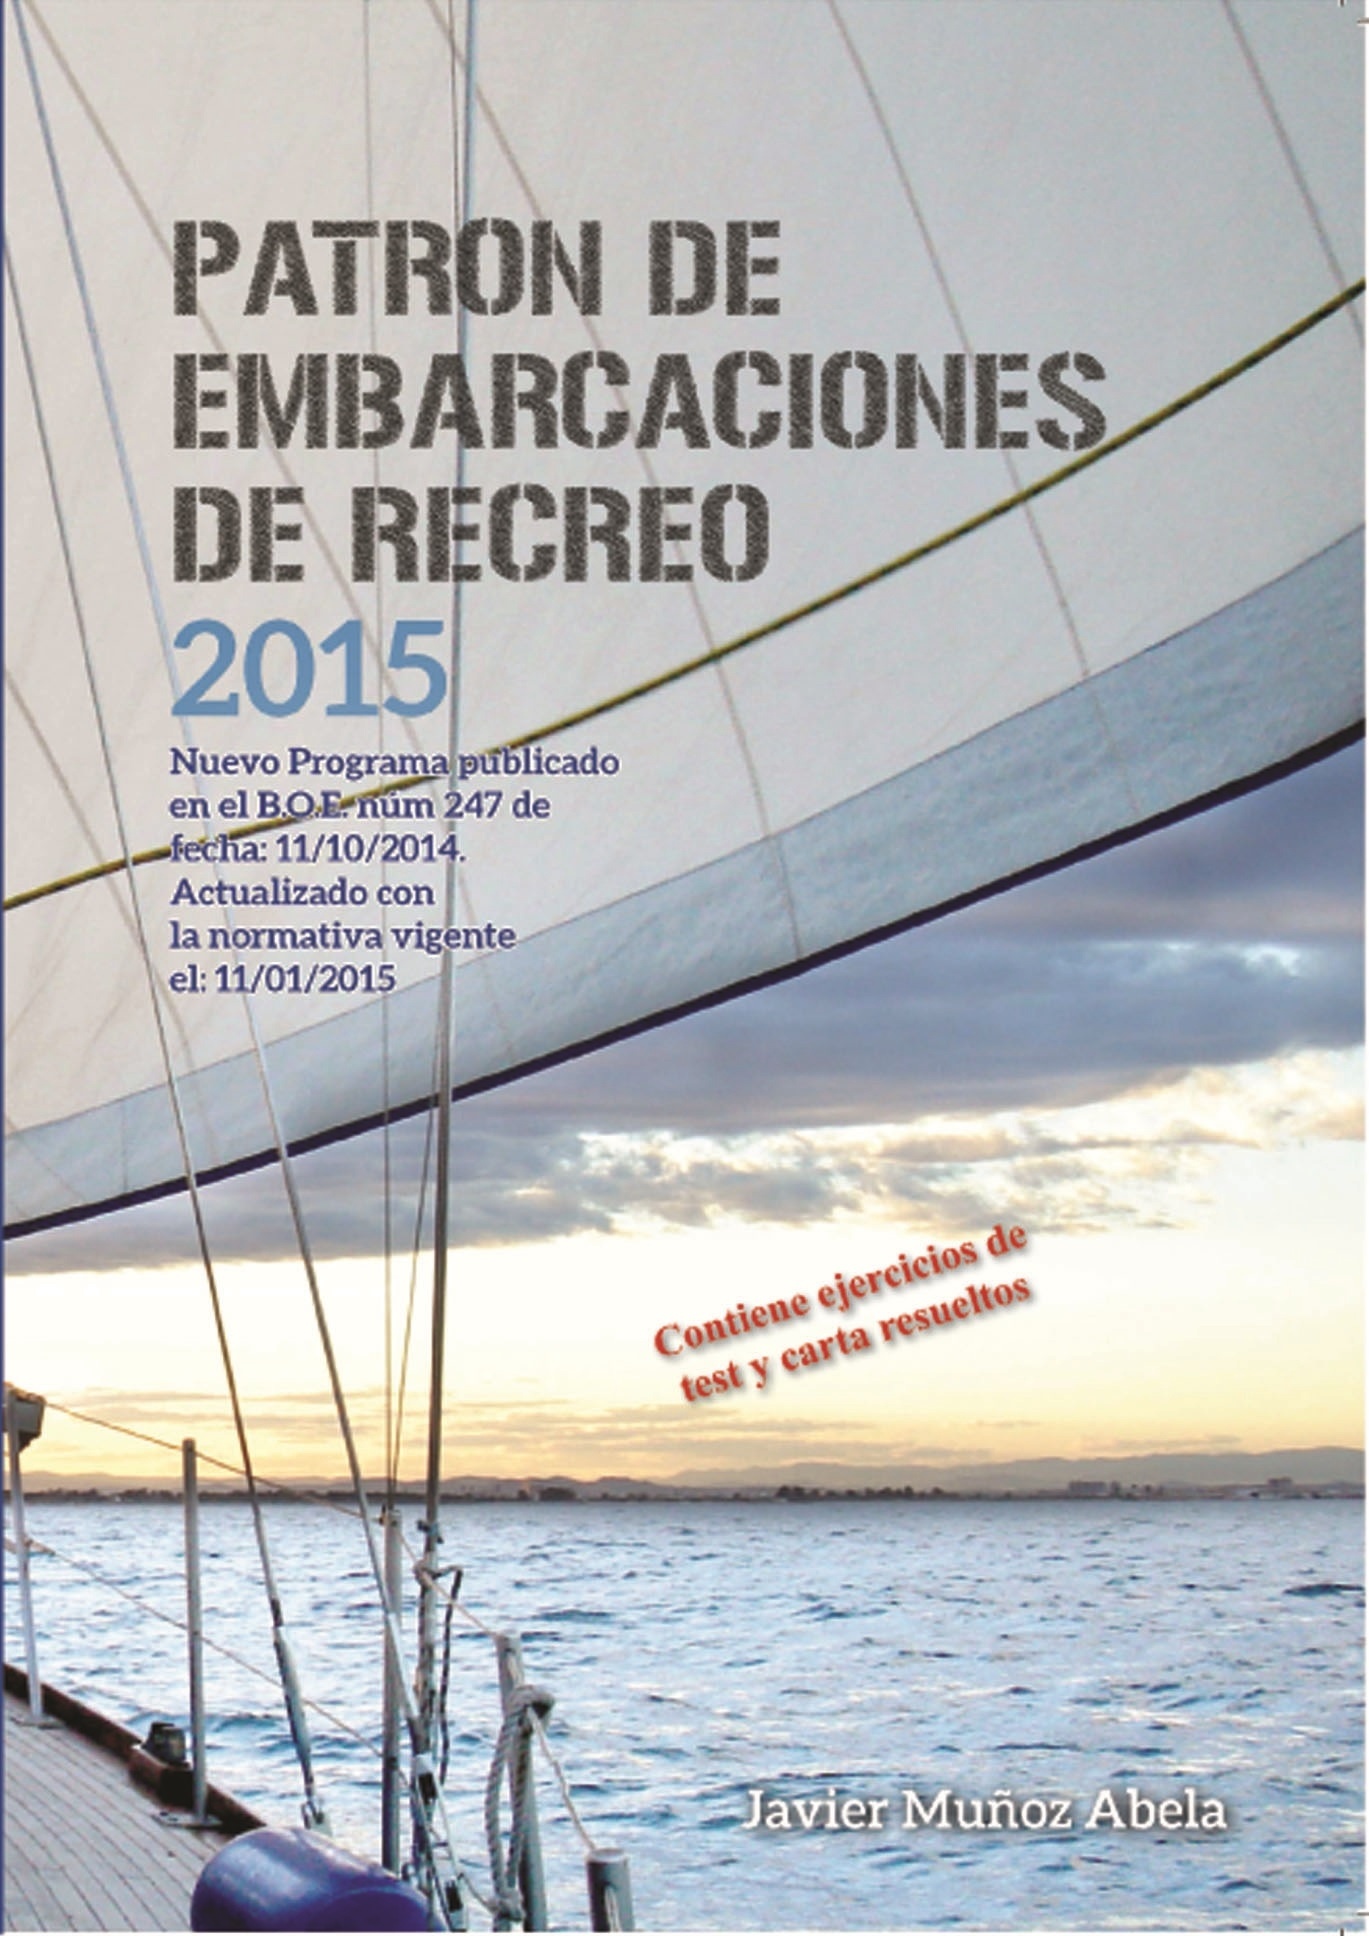 Patrón de embarcaciones de recreo 2015 "Nuevo programa publicado en el BOE num. 247 de 11/10/15. Actuali"